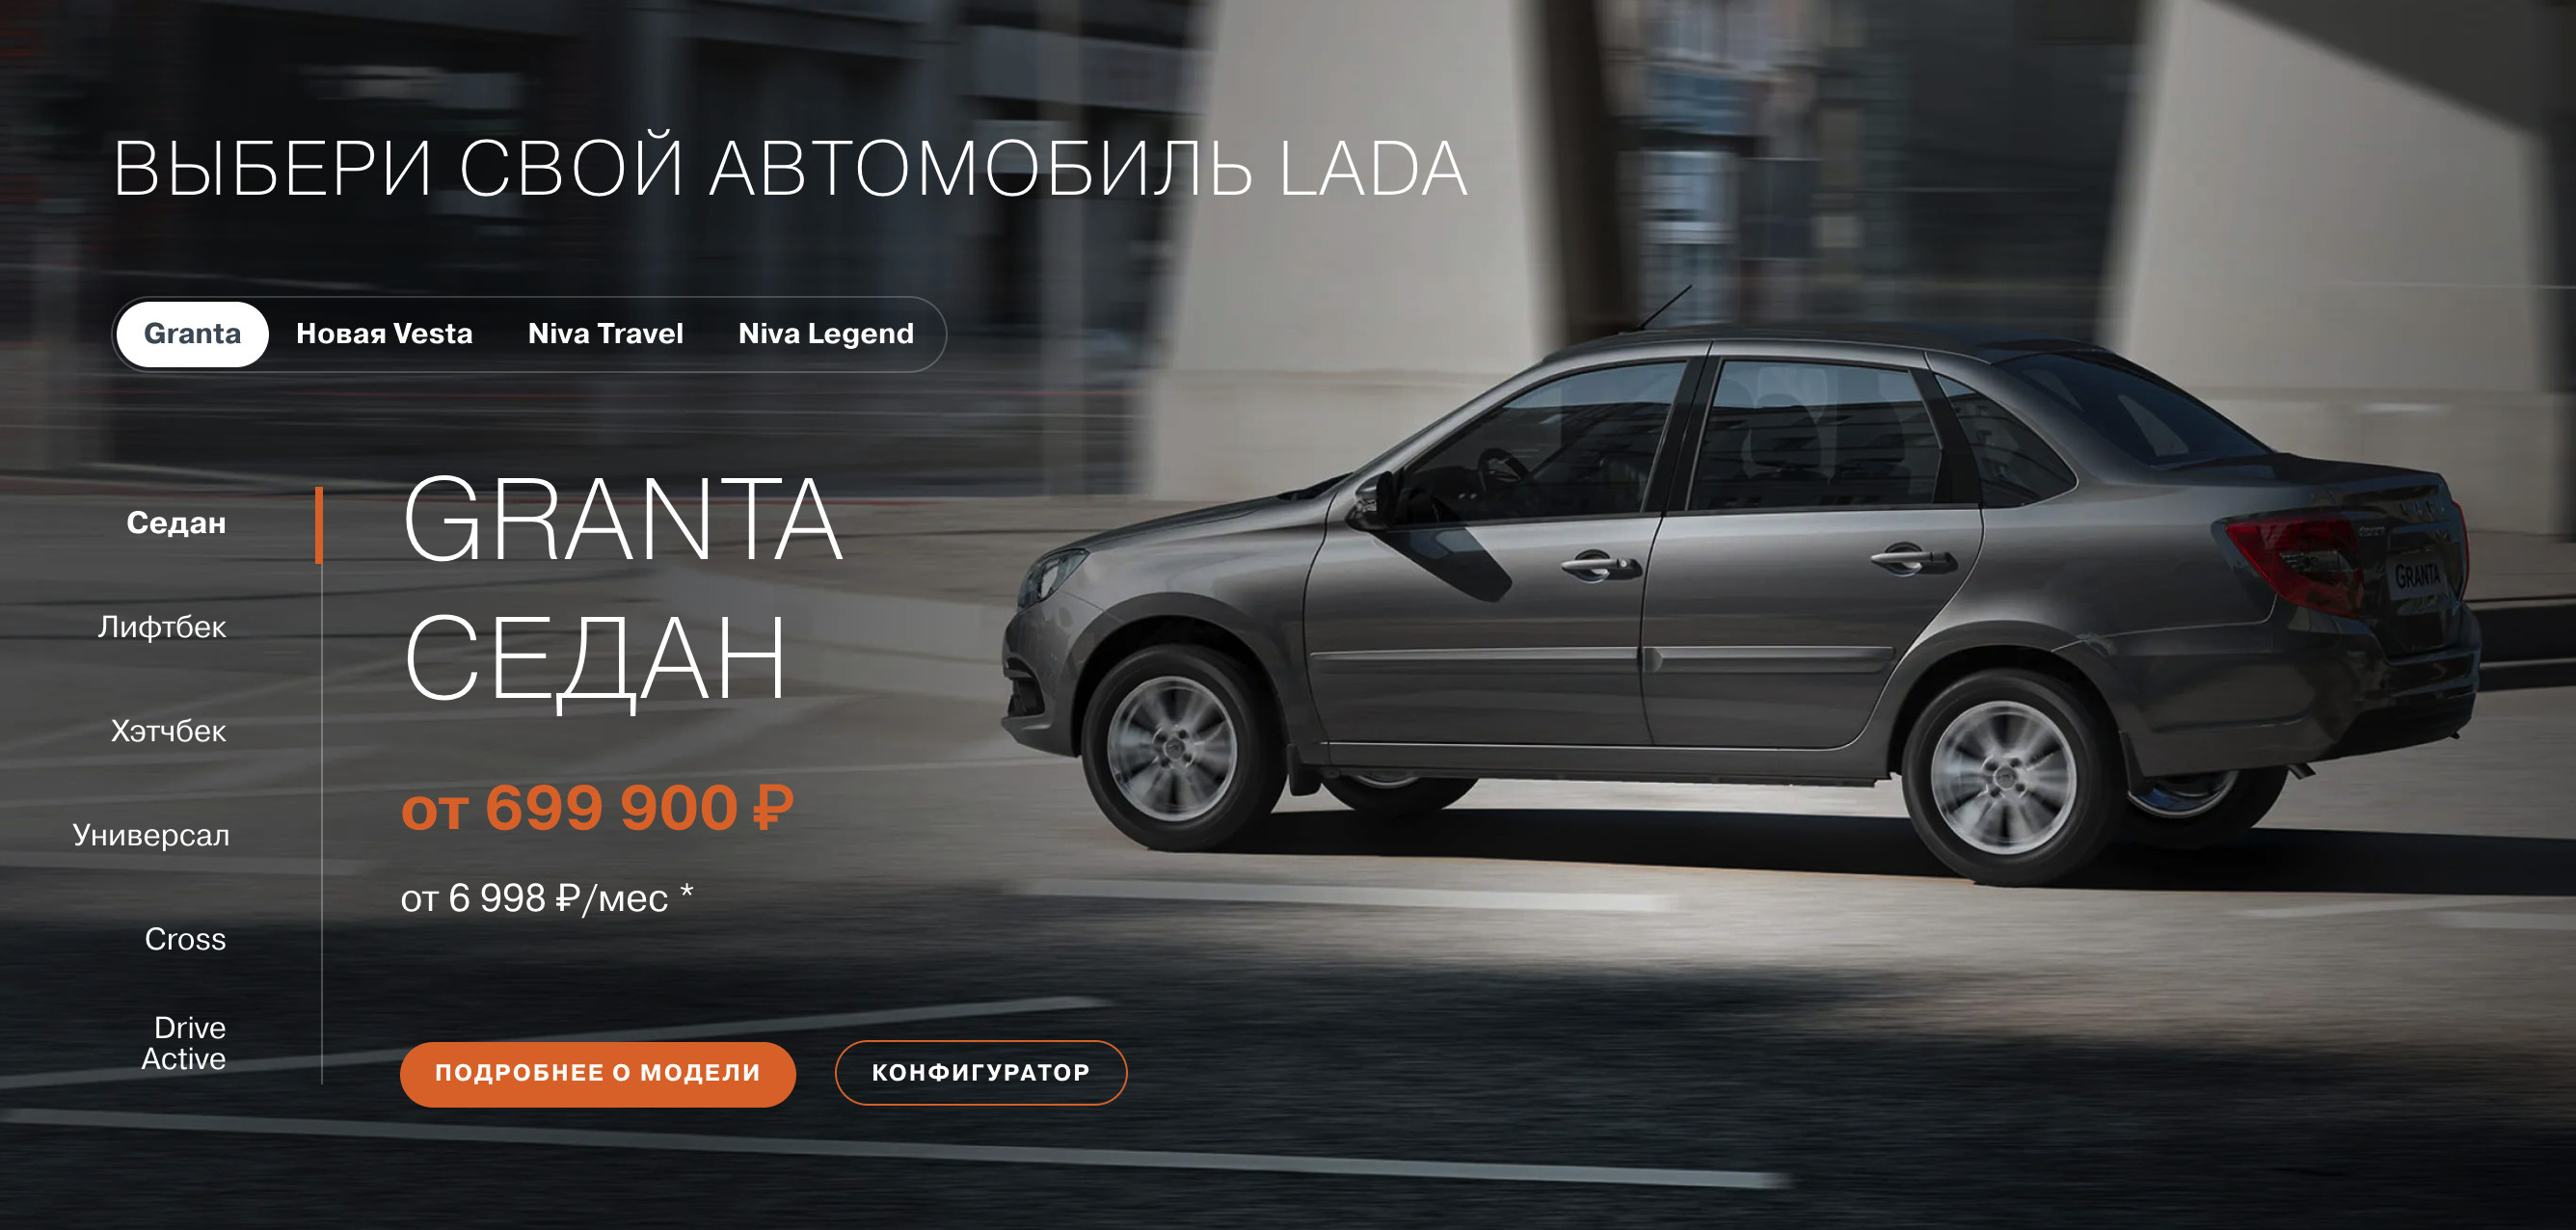 Стоимость Lada Granta начинается от 700 тысяч рублей